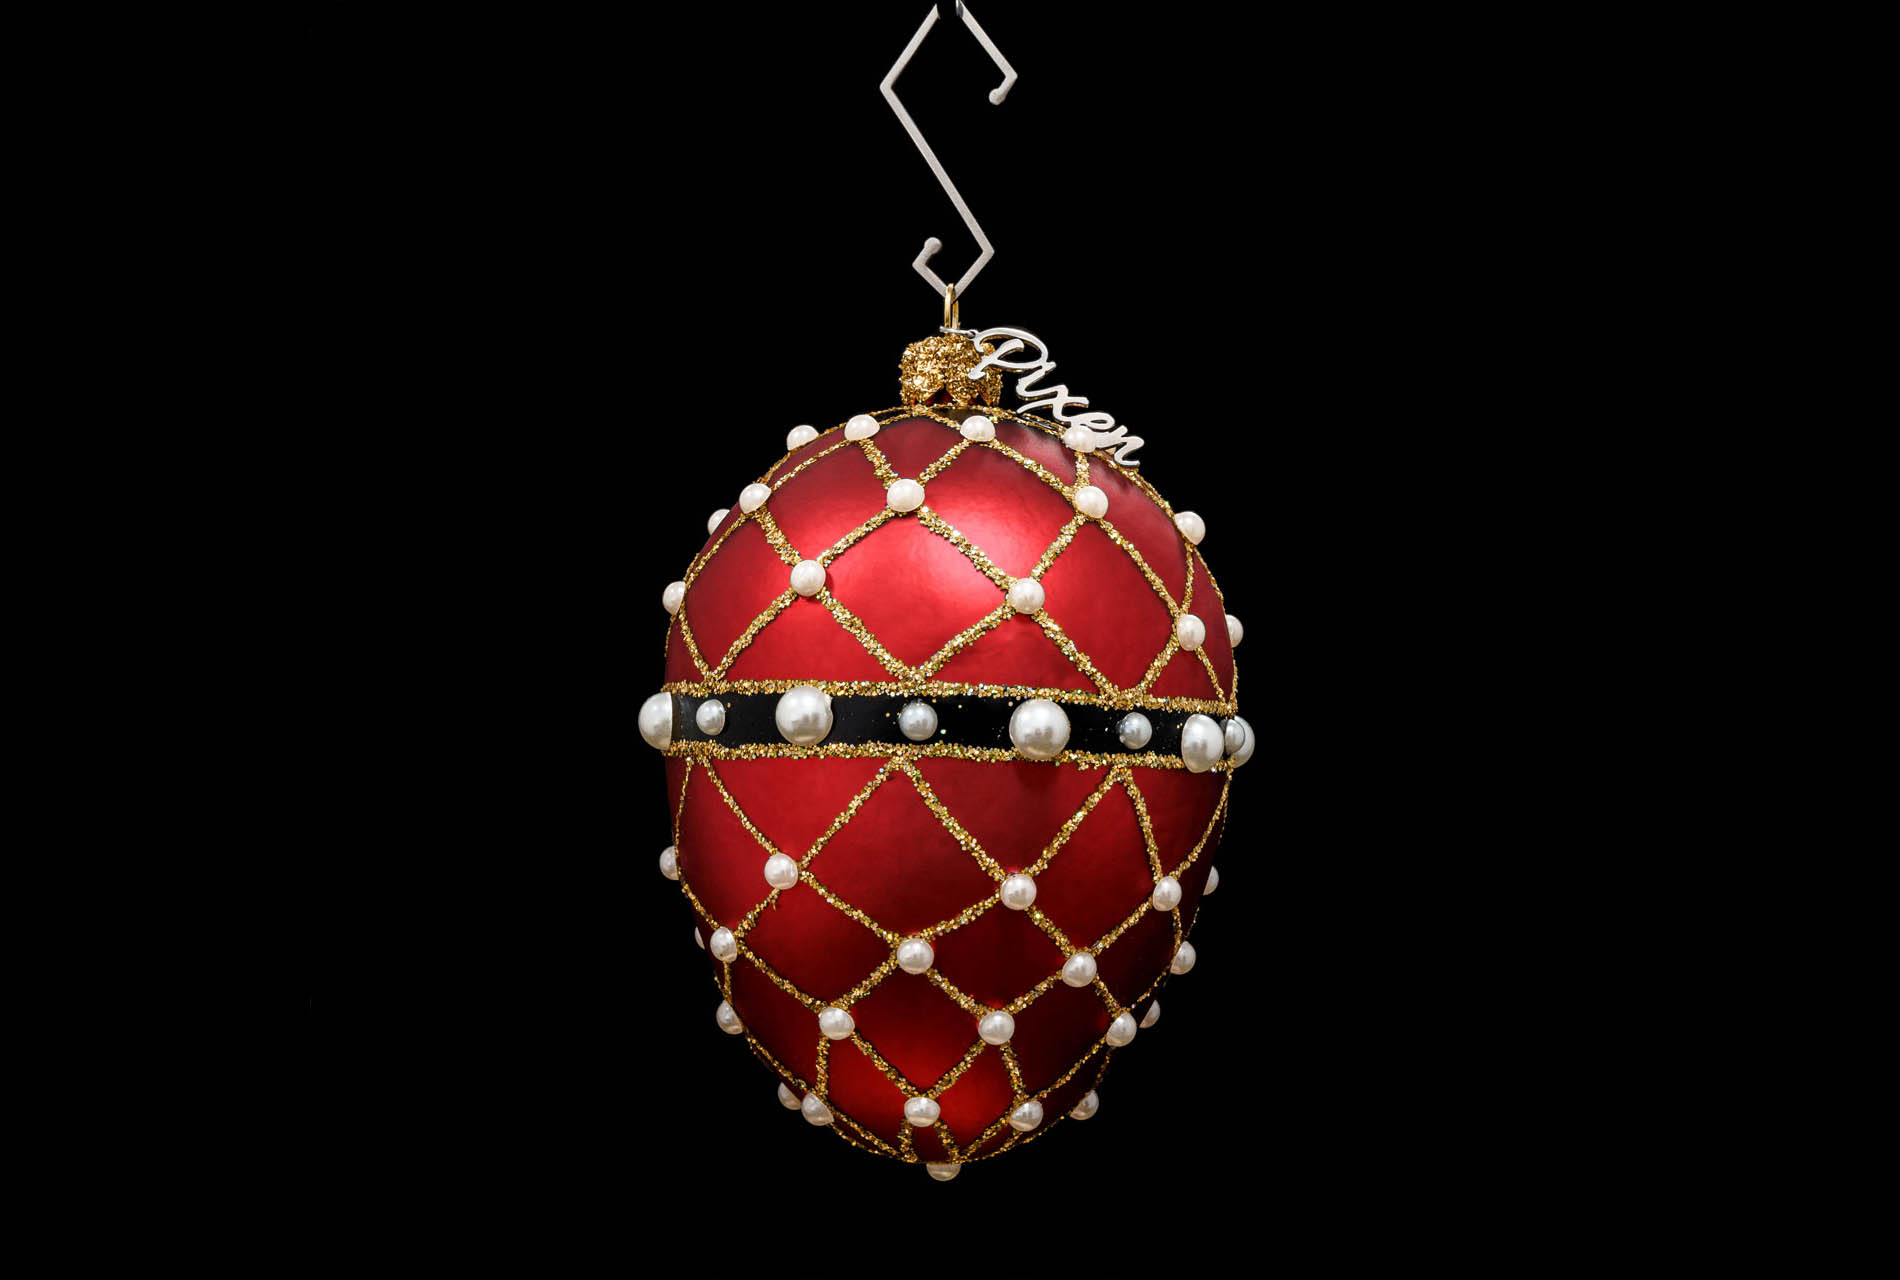 Reverie-glass-christmas-ornament-House-of-PIXEN-1900.jpg